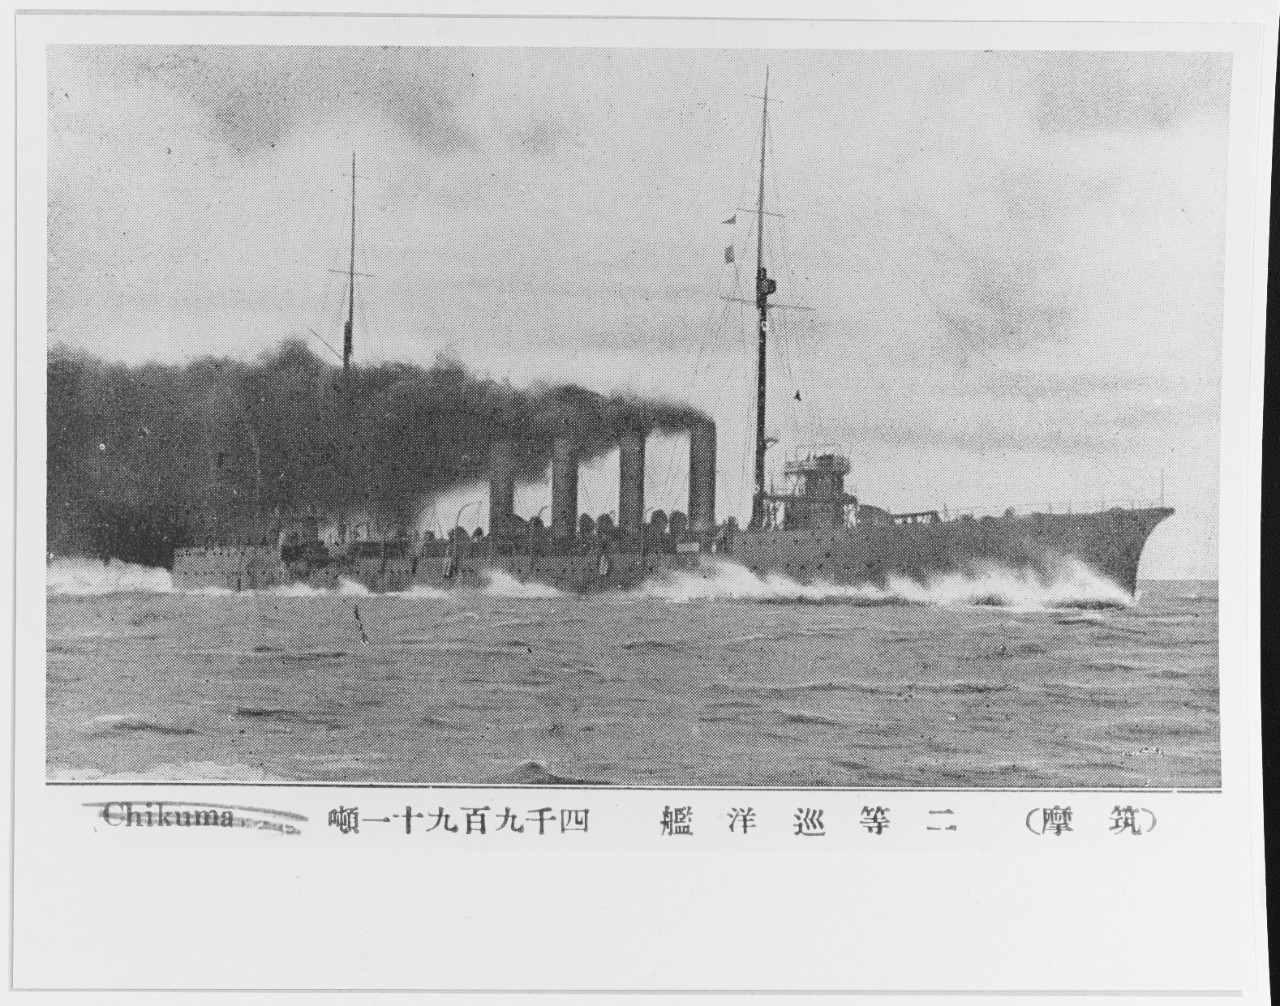 YAHAGI (Japanese cruiser, 1911)